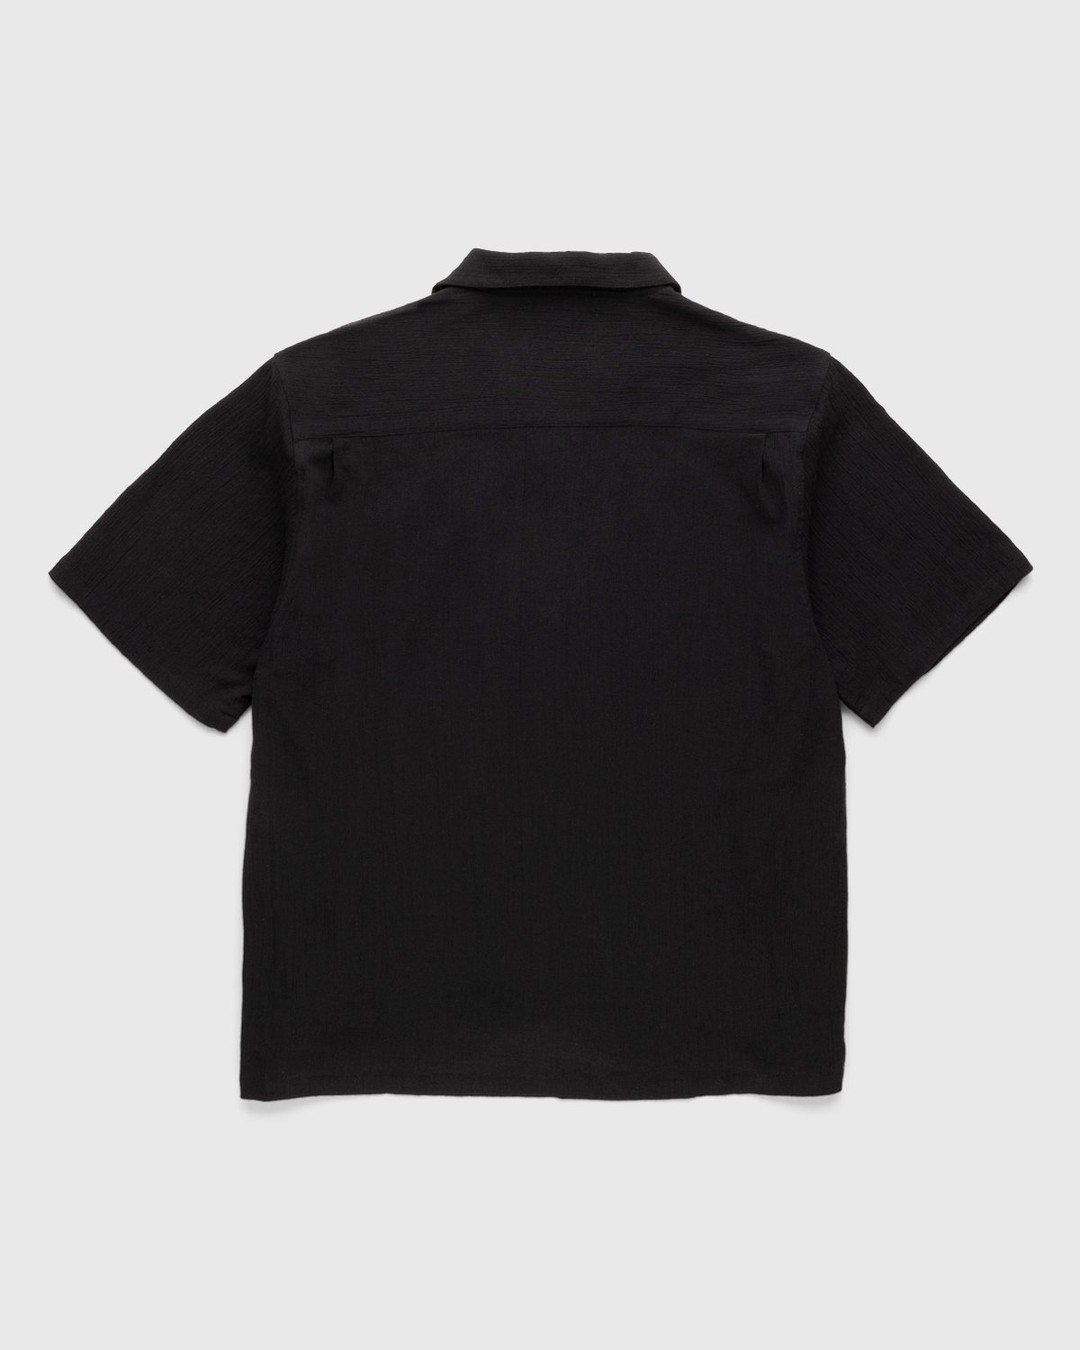 Highsnobiety – Crepe Short Sleeve Shirt Black - Shortsleeve Shirts - Black - Image 2